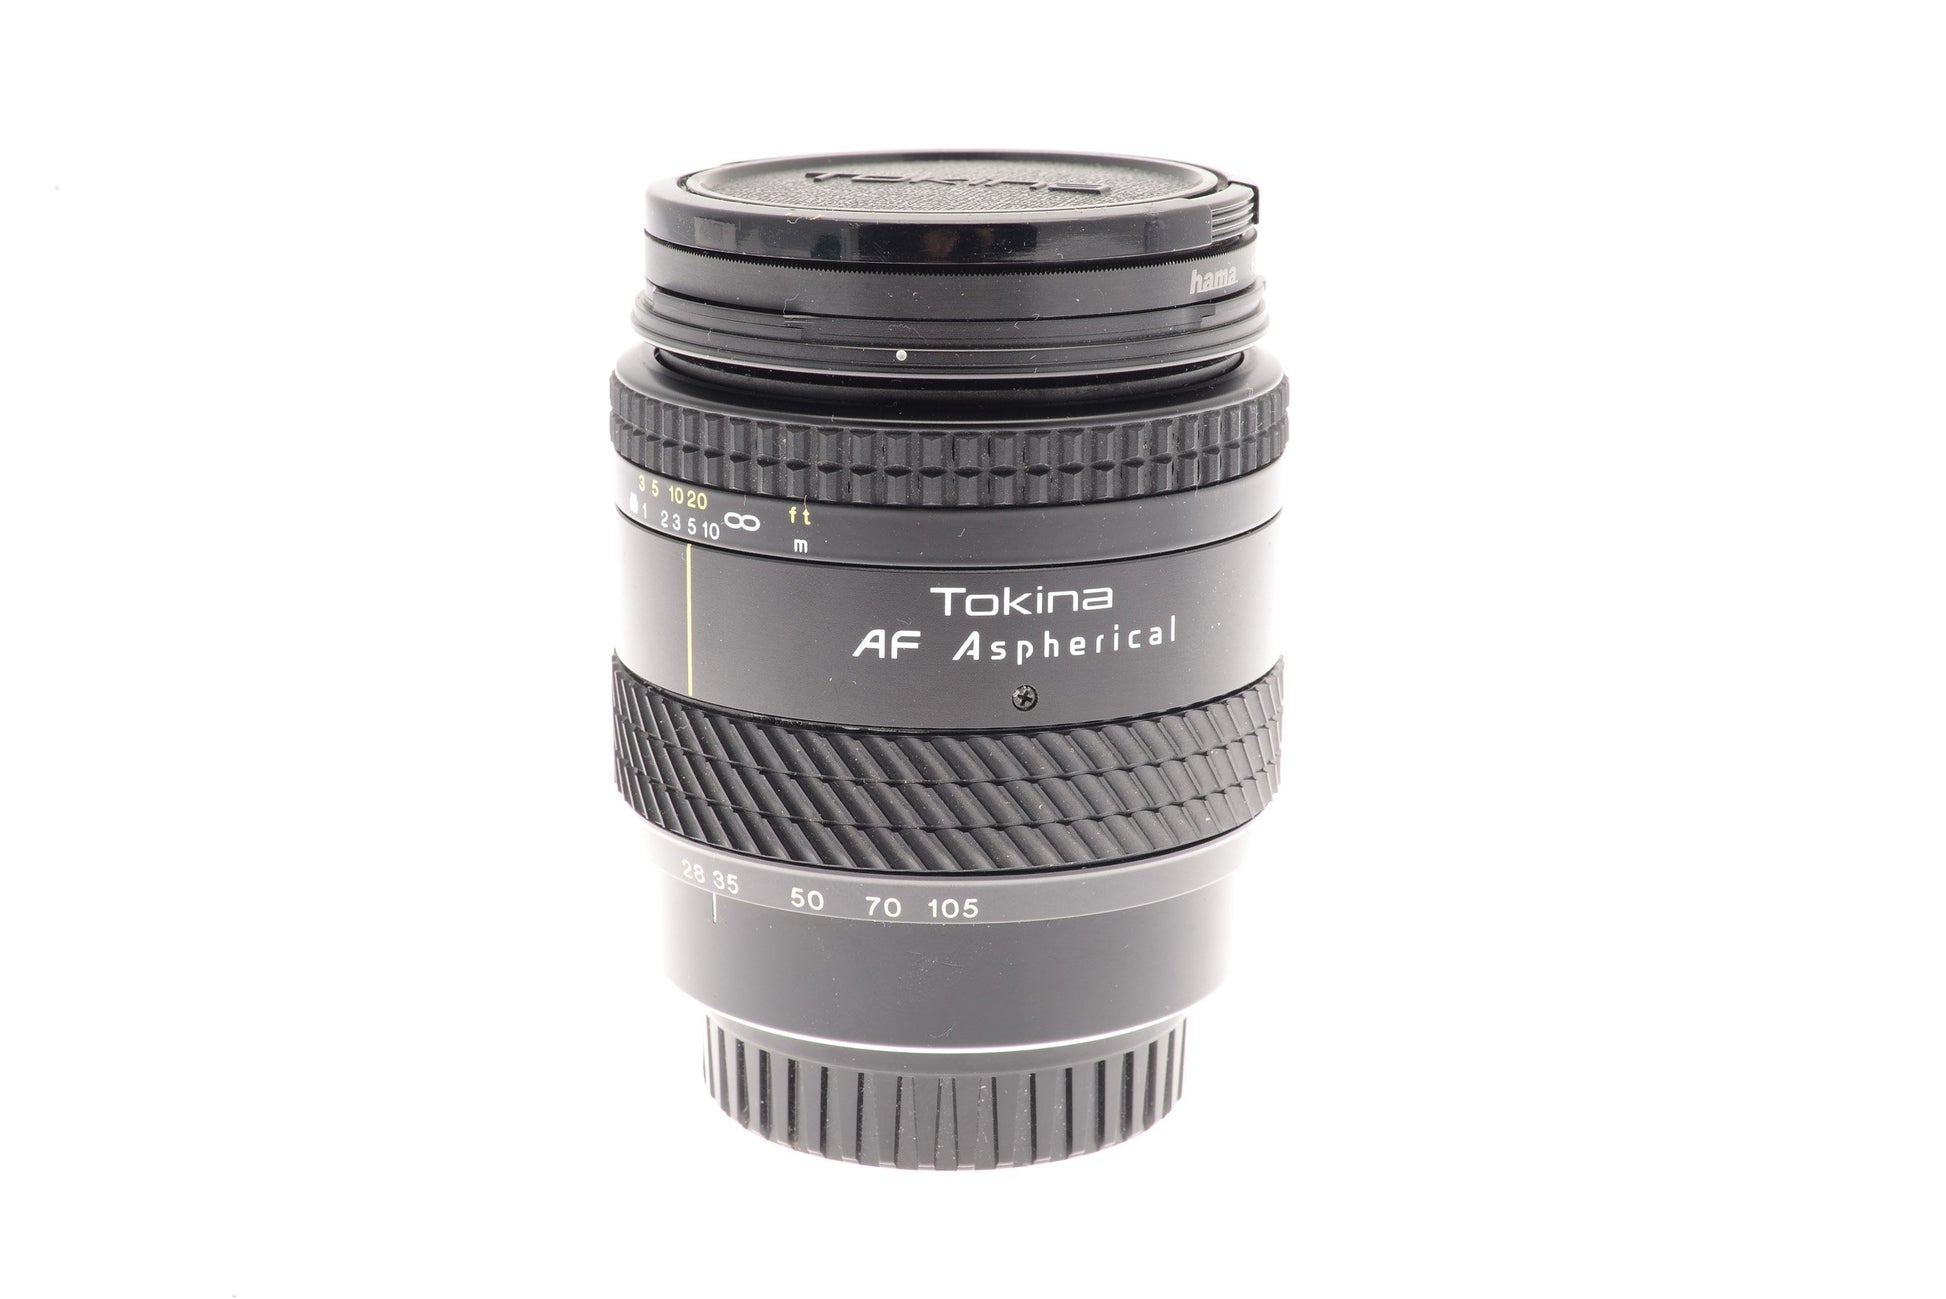 Tokina 28-105mm f3.5-4.5 AF Aspherical  - Lens